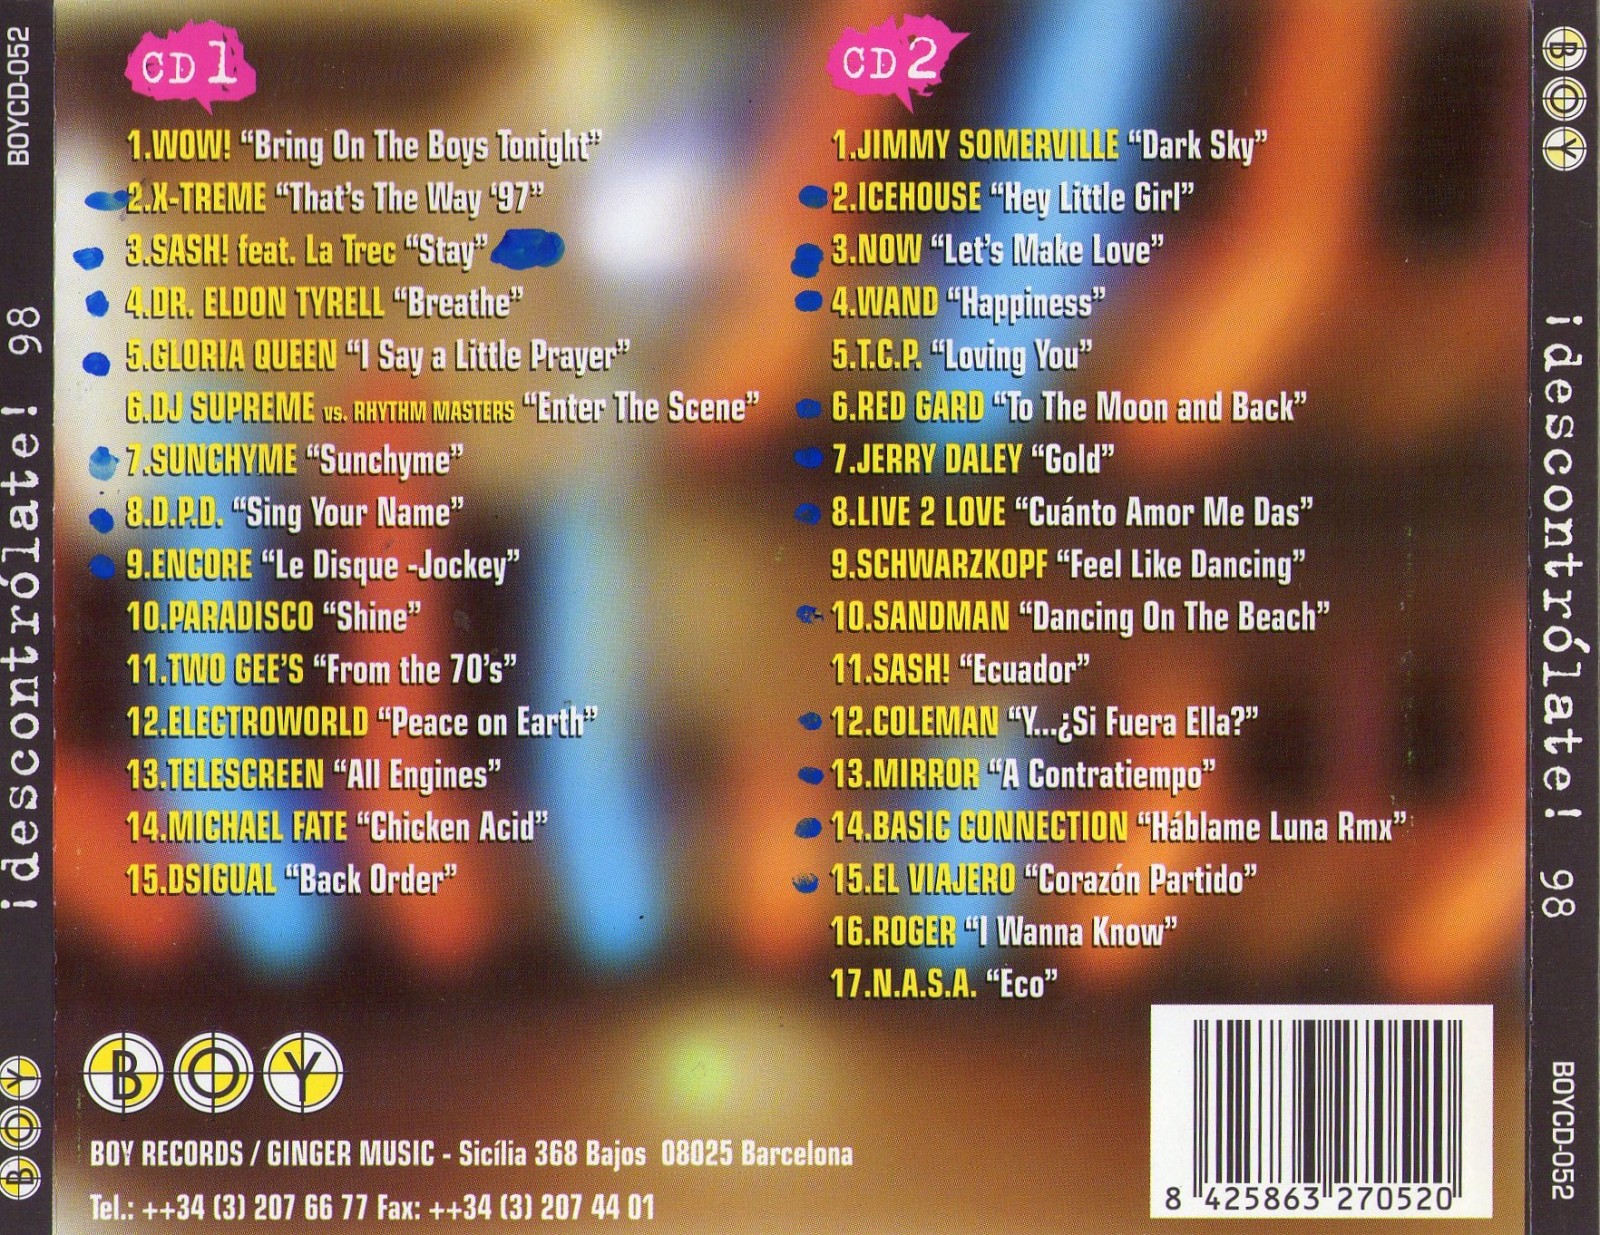 descontrolate 98 (1998) -  2 cds  -  320kbps  - boy records Dzcpow